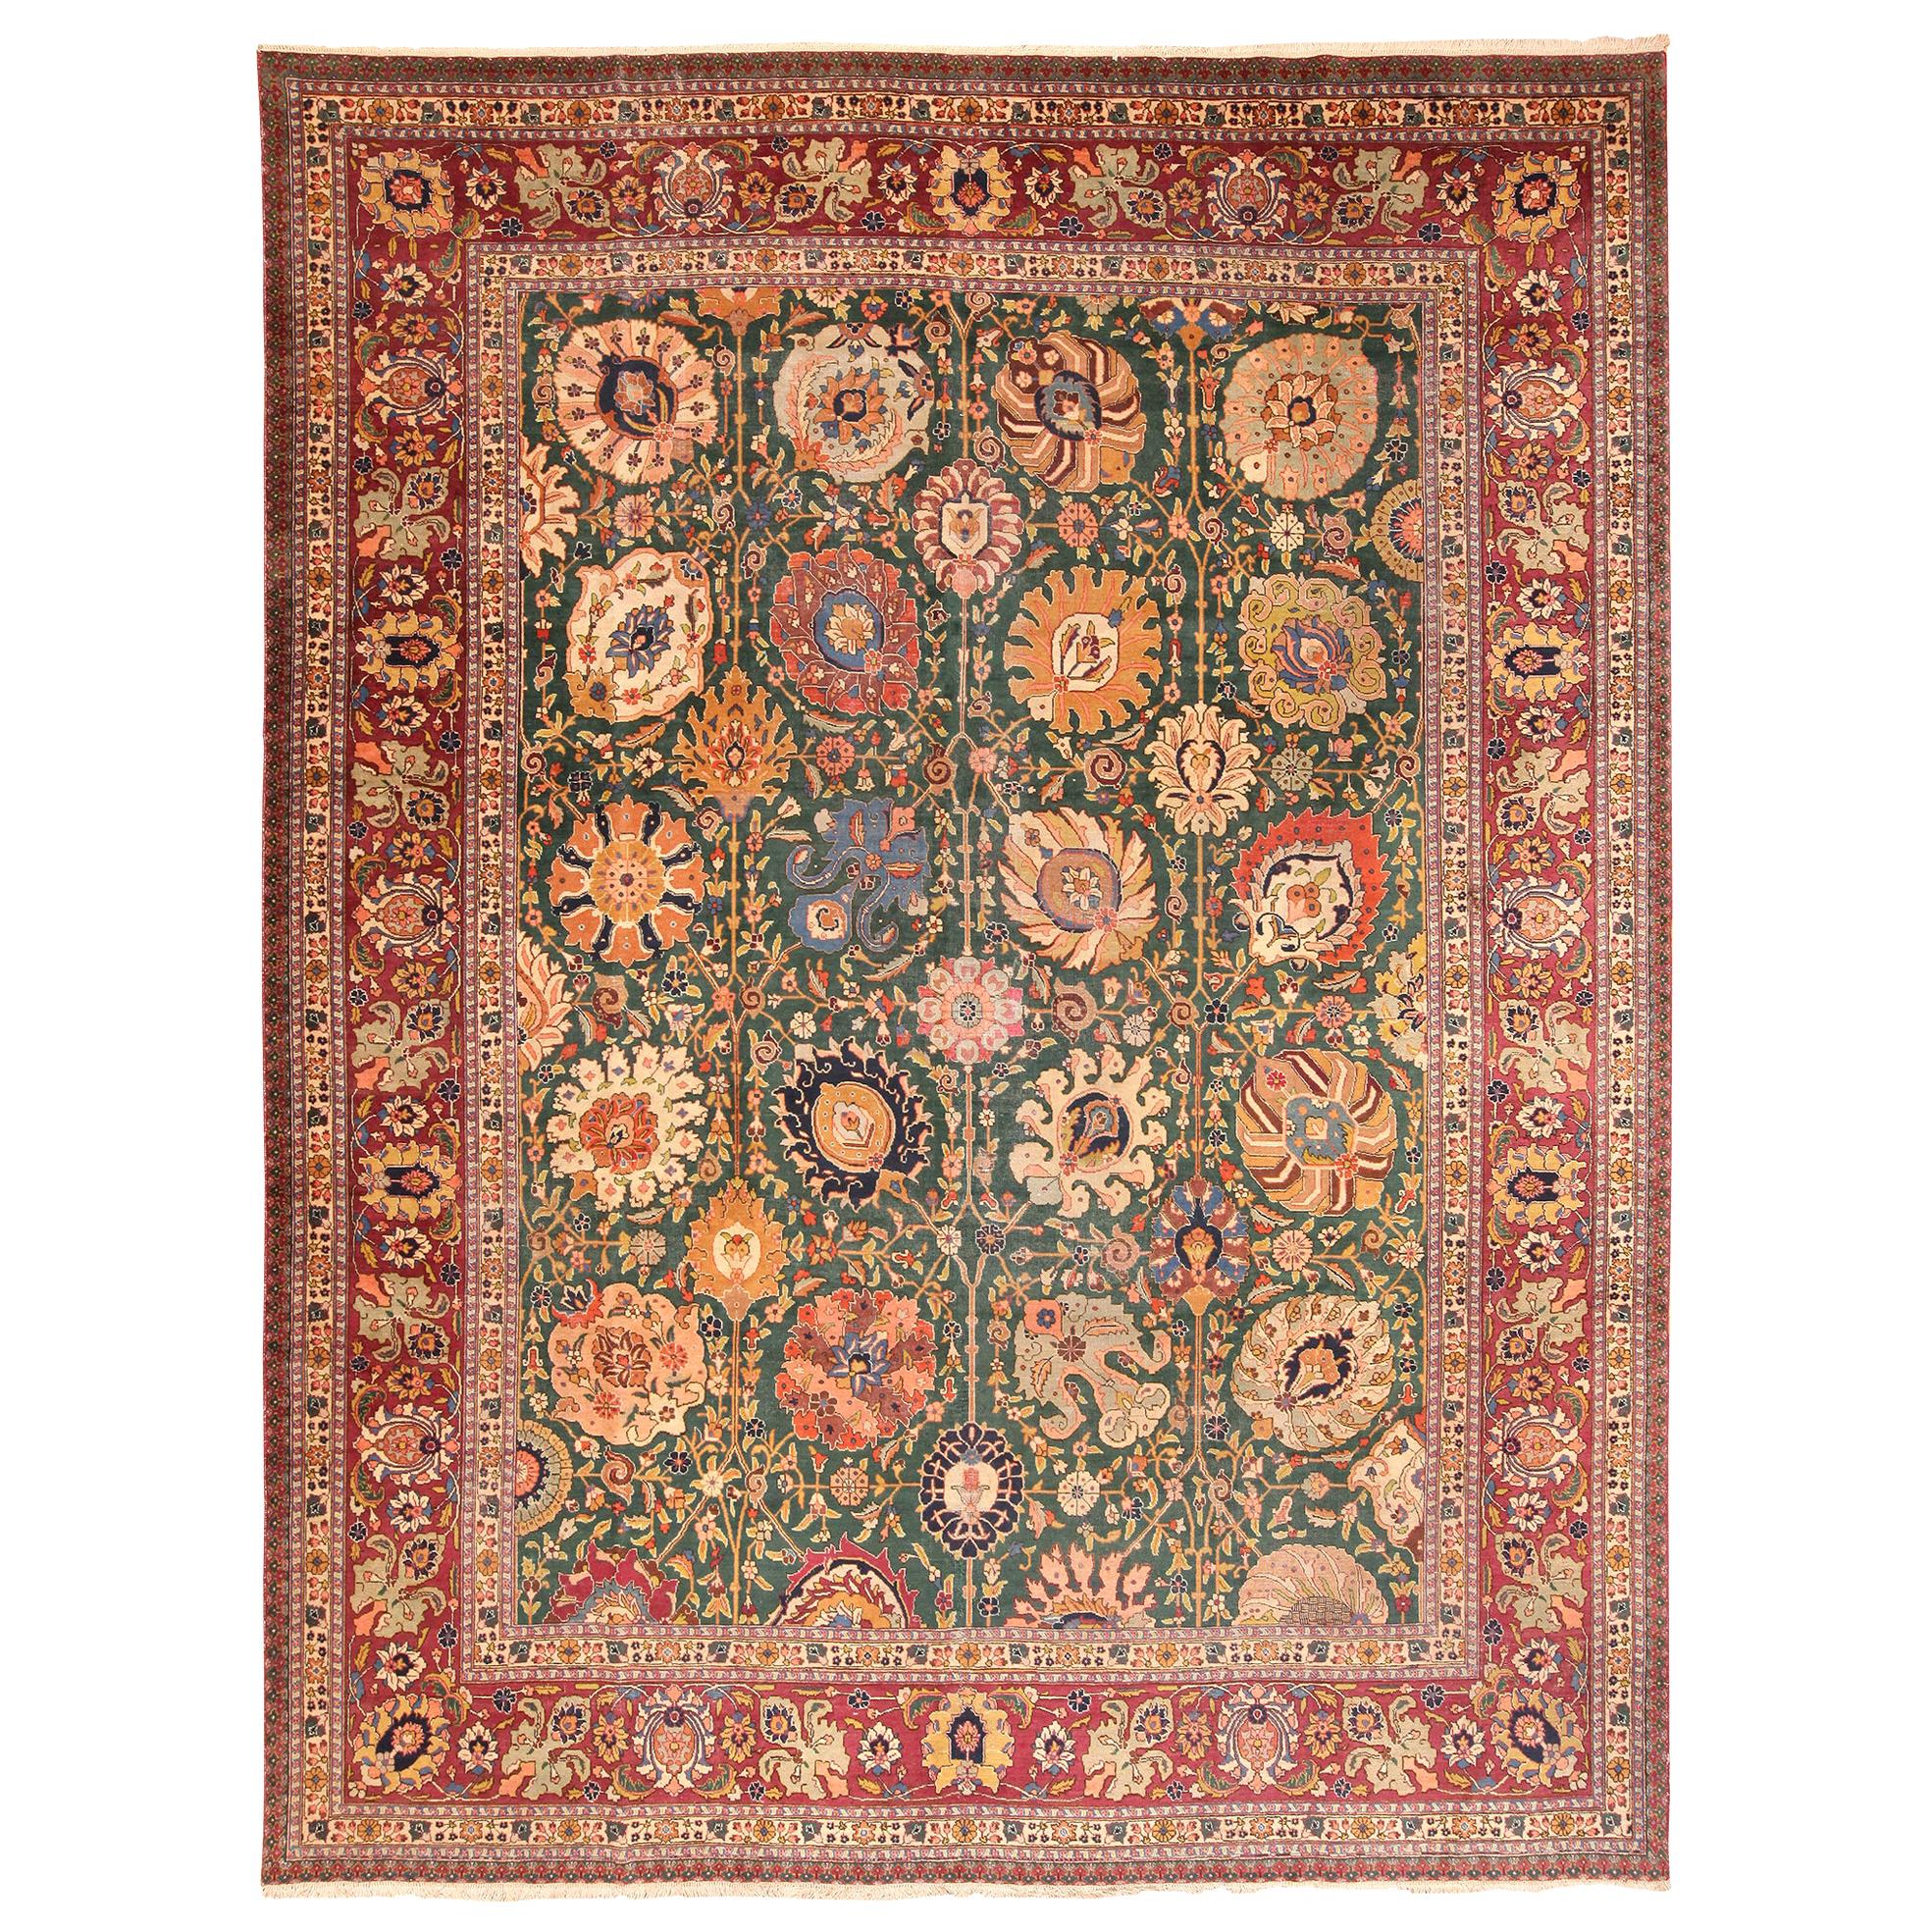 Antique Persian Tabriz Rug